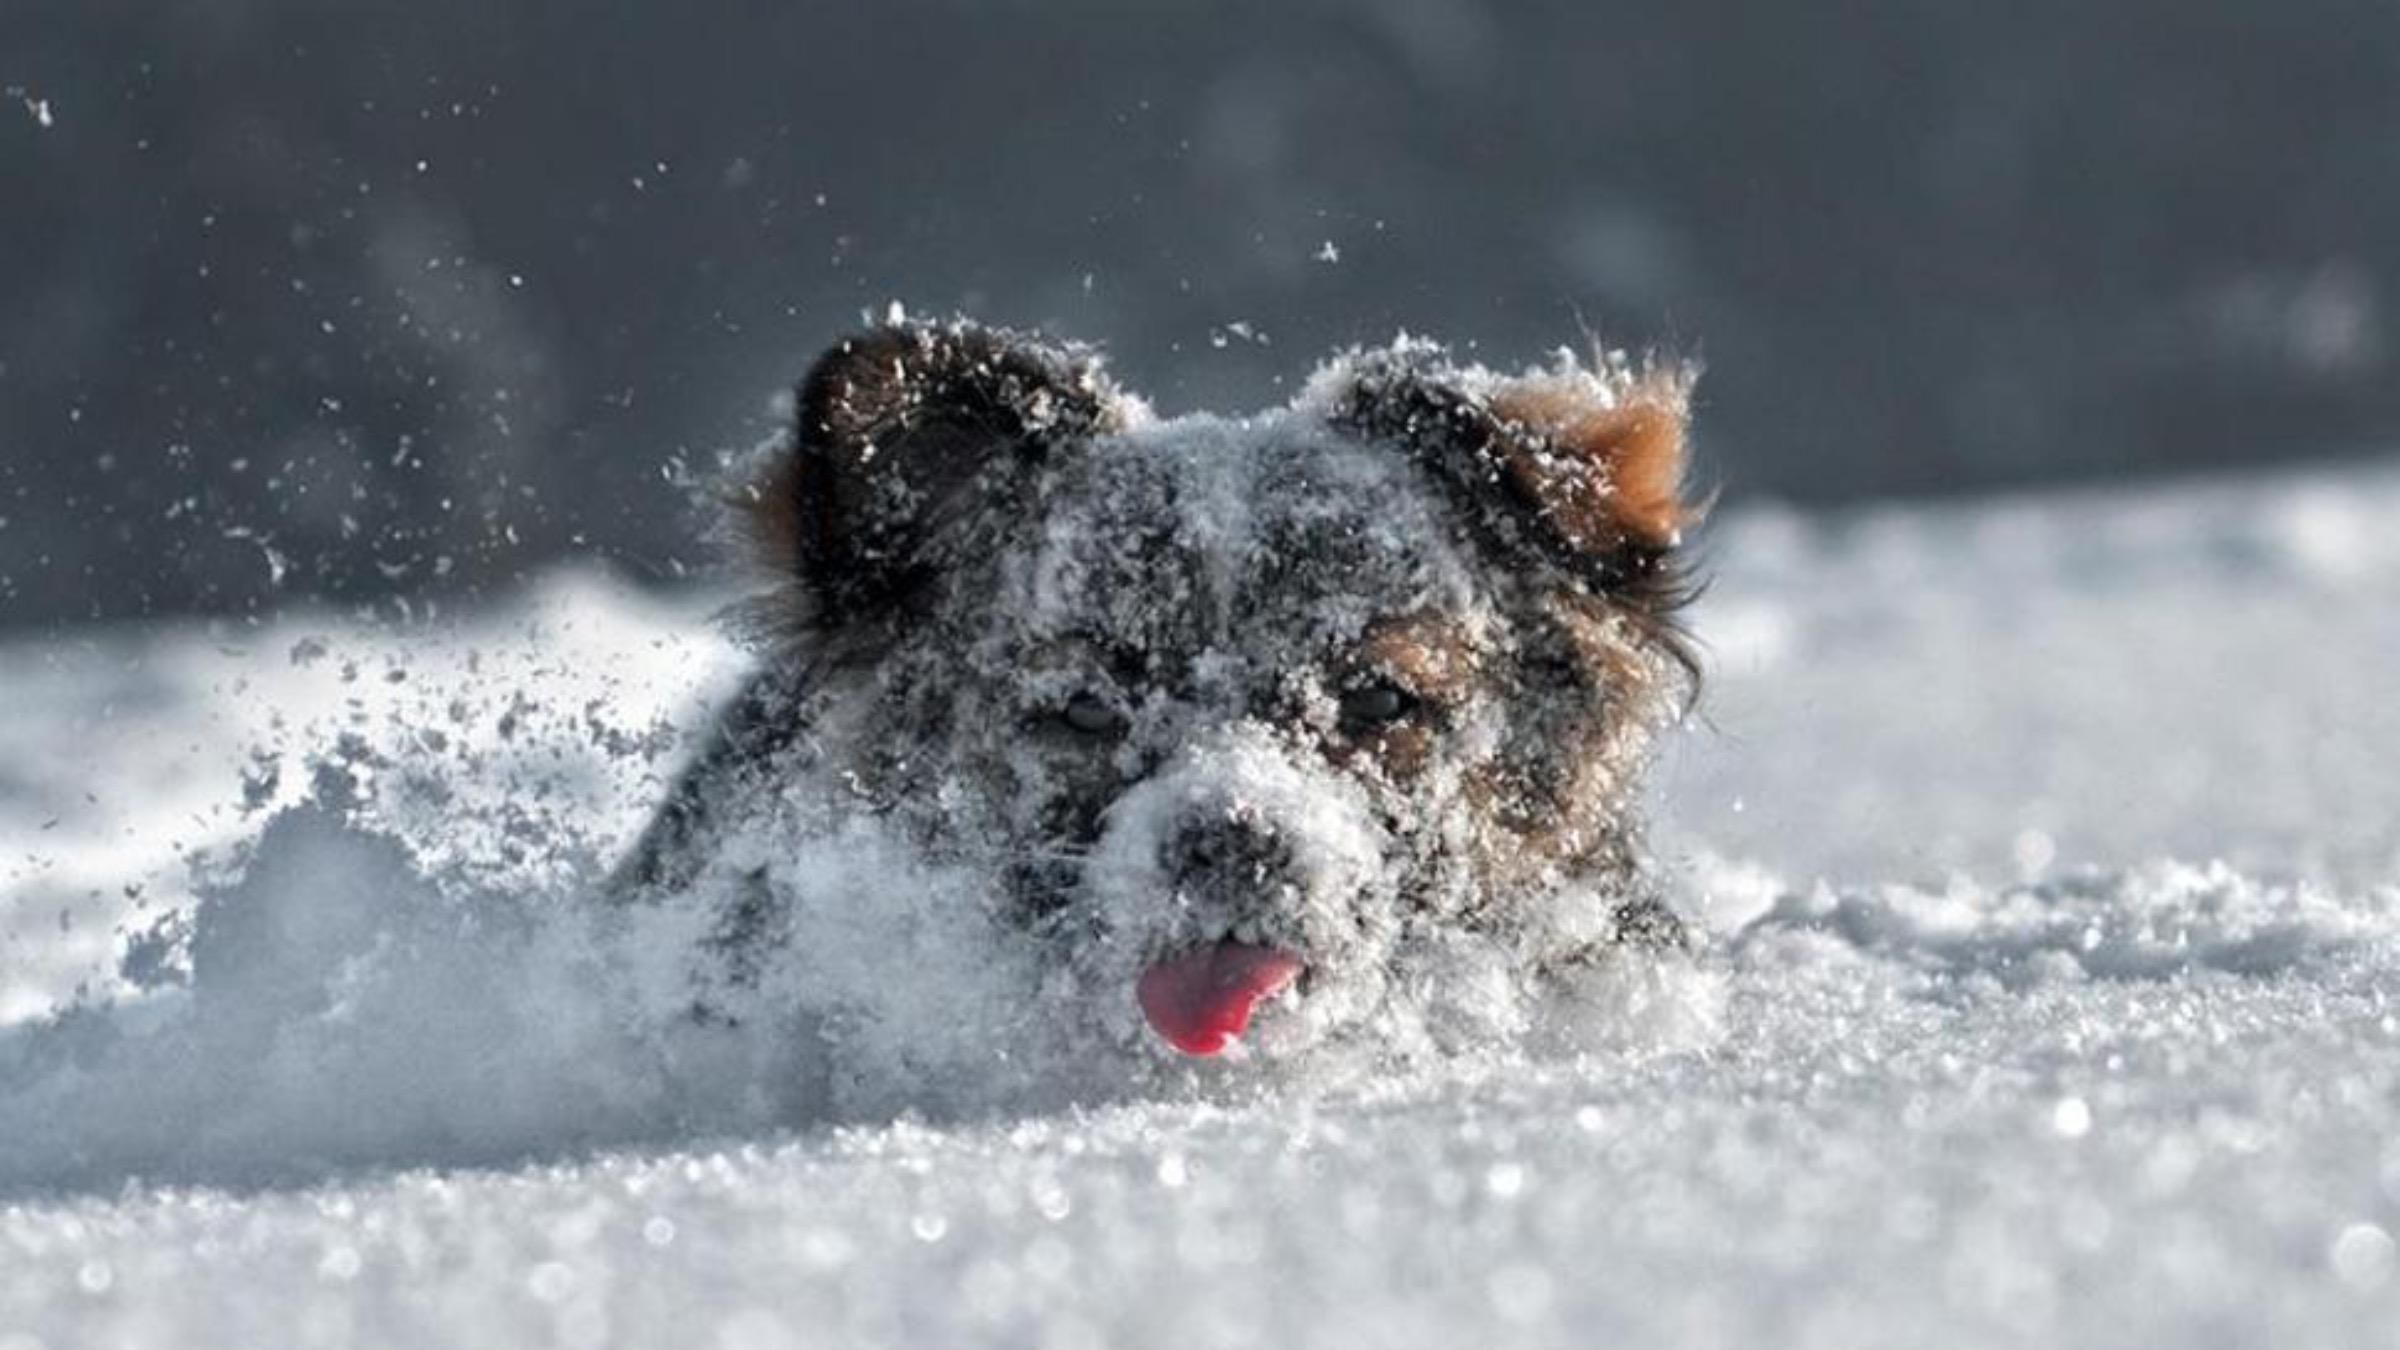 Откопали из снега: в США чудом нашли пса, пропавшего еще летом - Pets